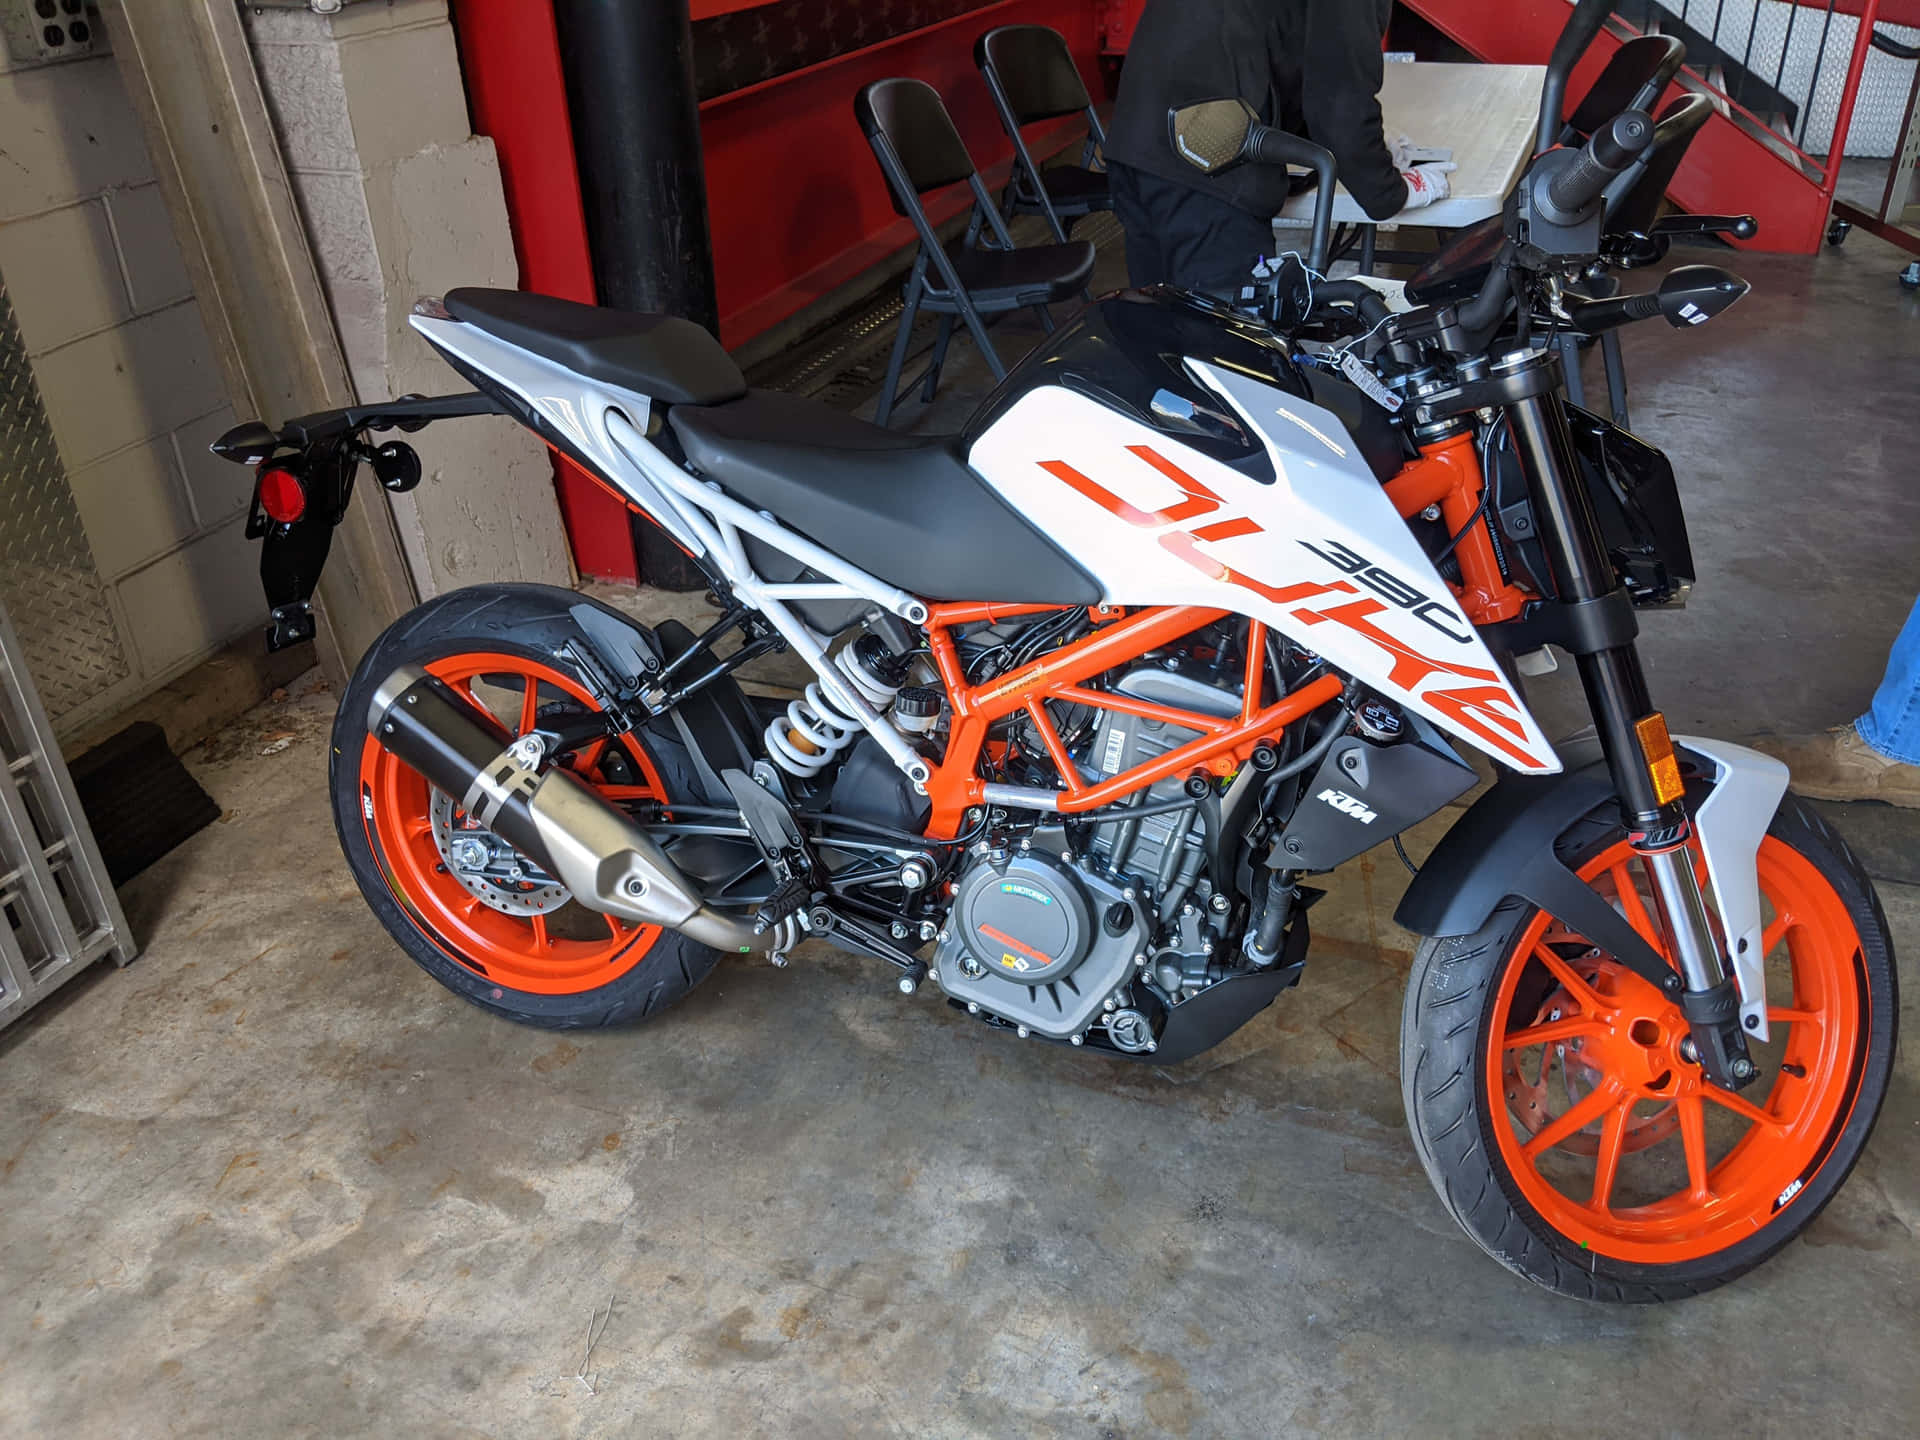 Ktm Duke 390 Motorbike Parked In Garage Picture